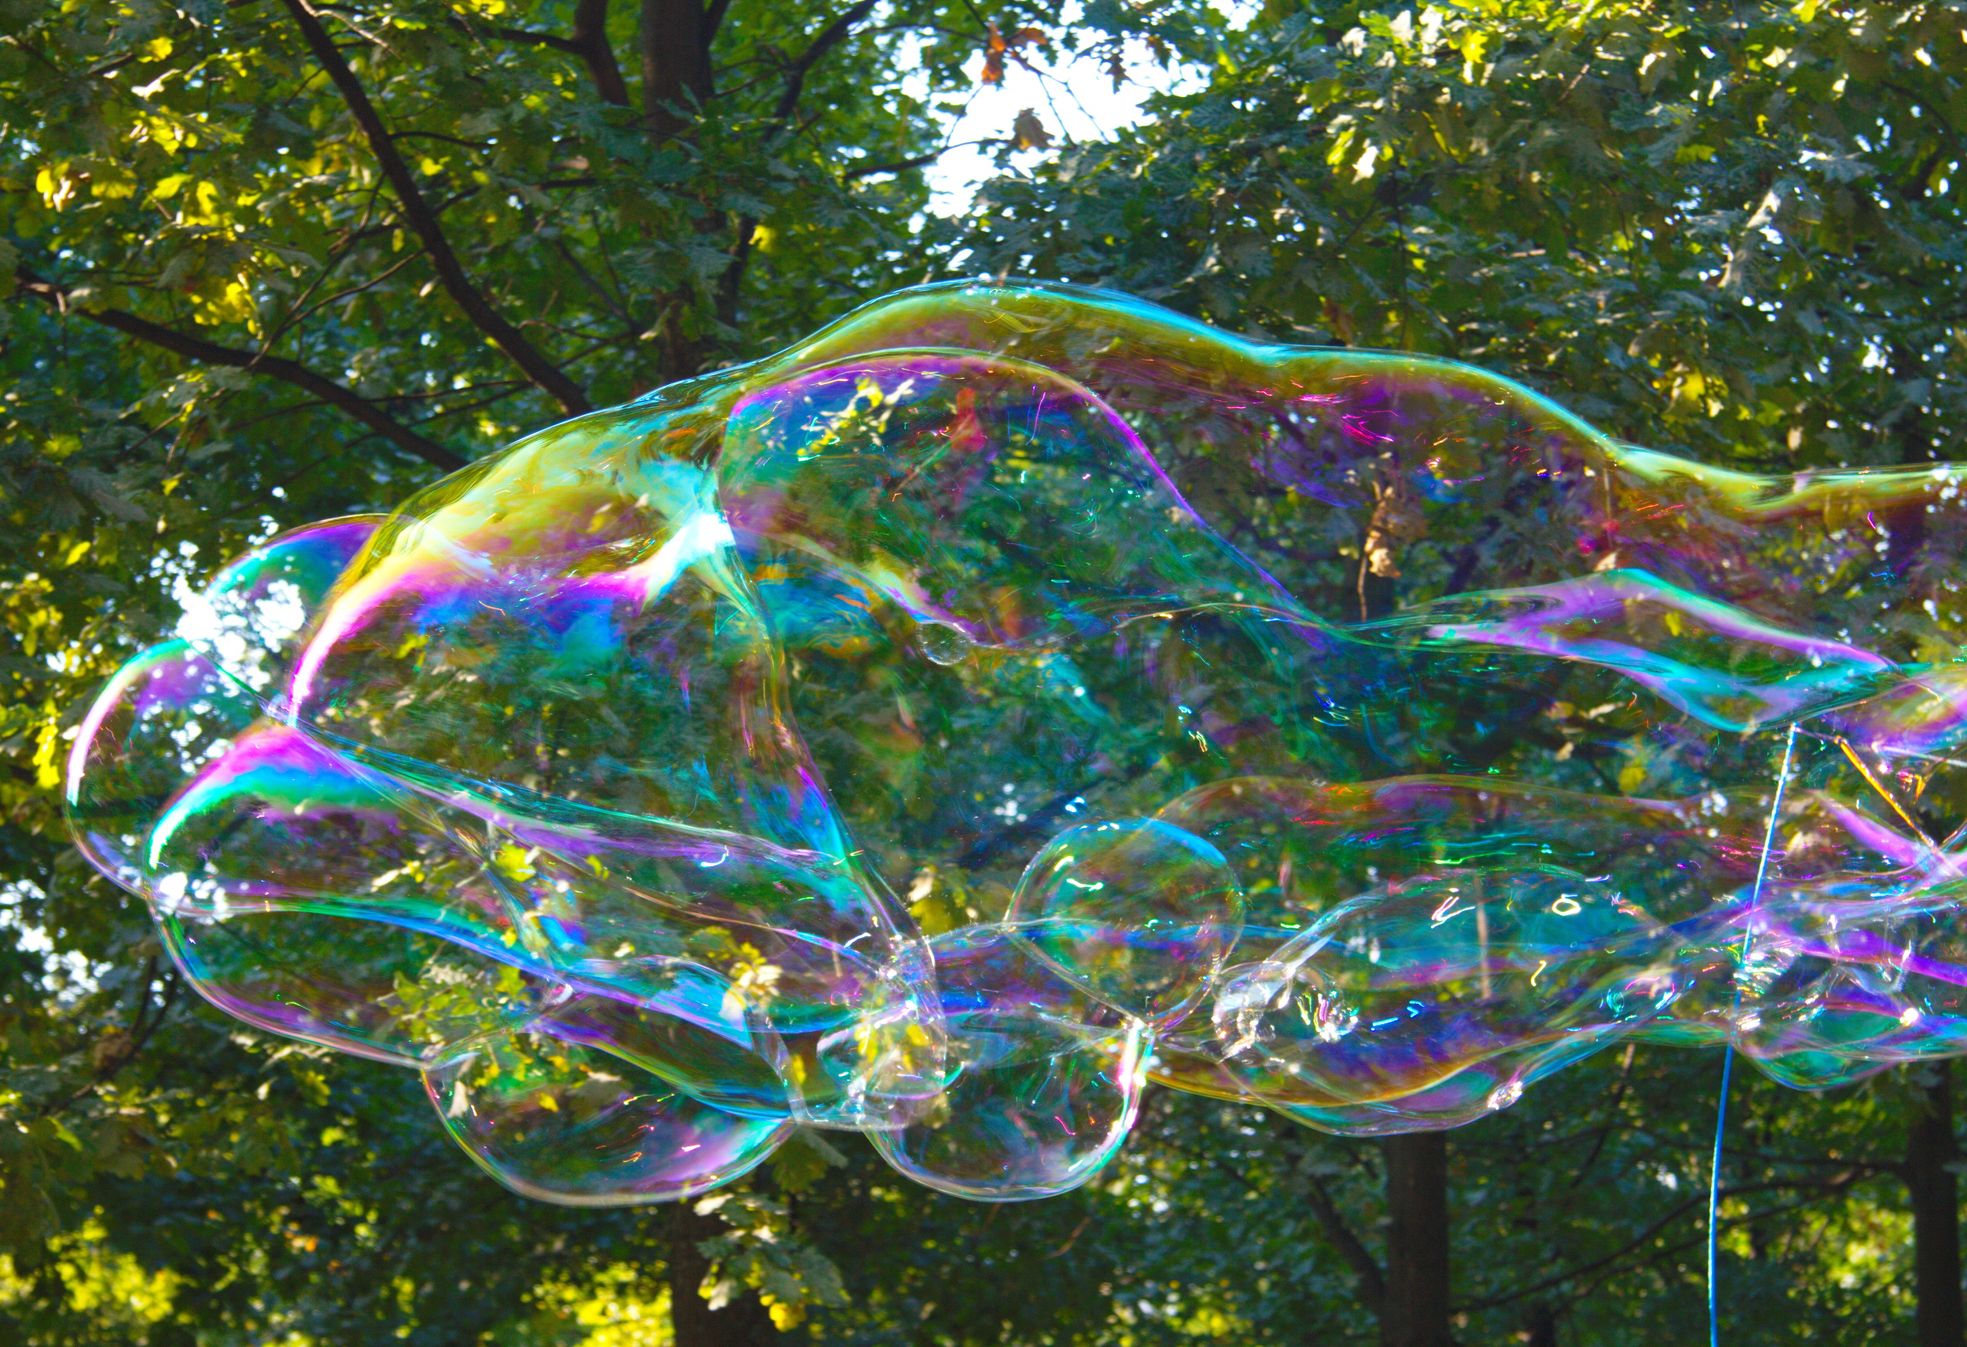 Soap bubble - Wikipedia